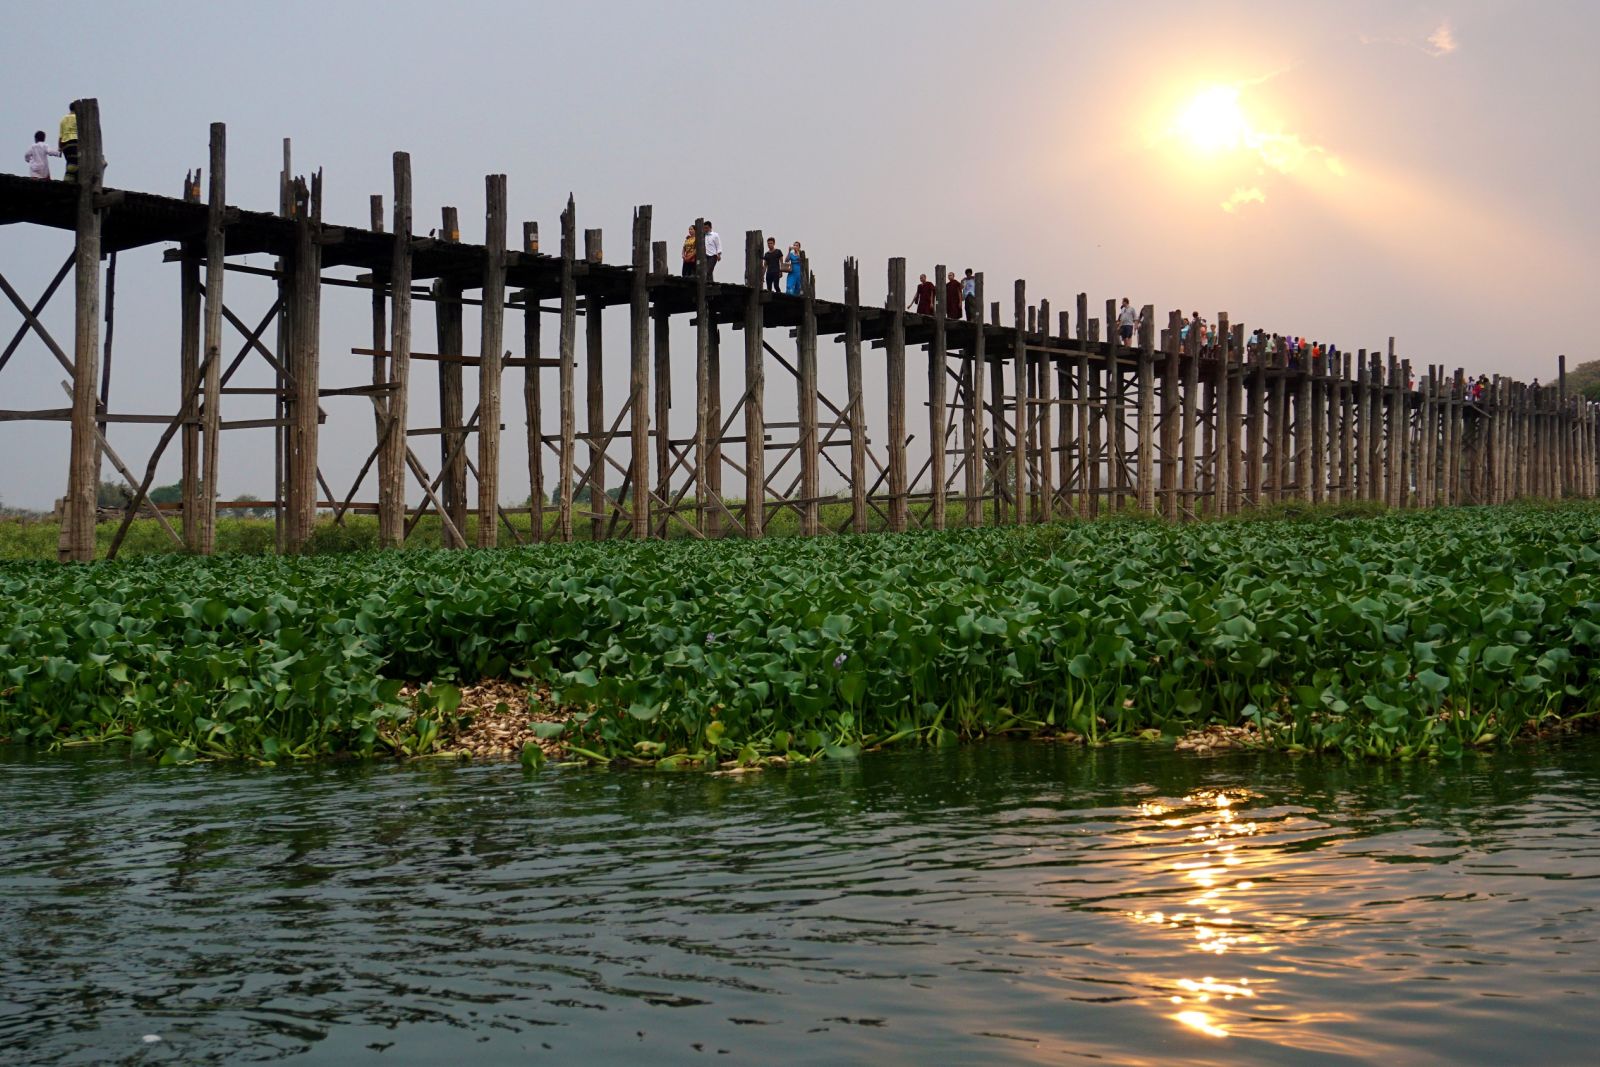 Sonnenuntergang über der langen Teakholzbrücke von U Bein in Myanmar